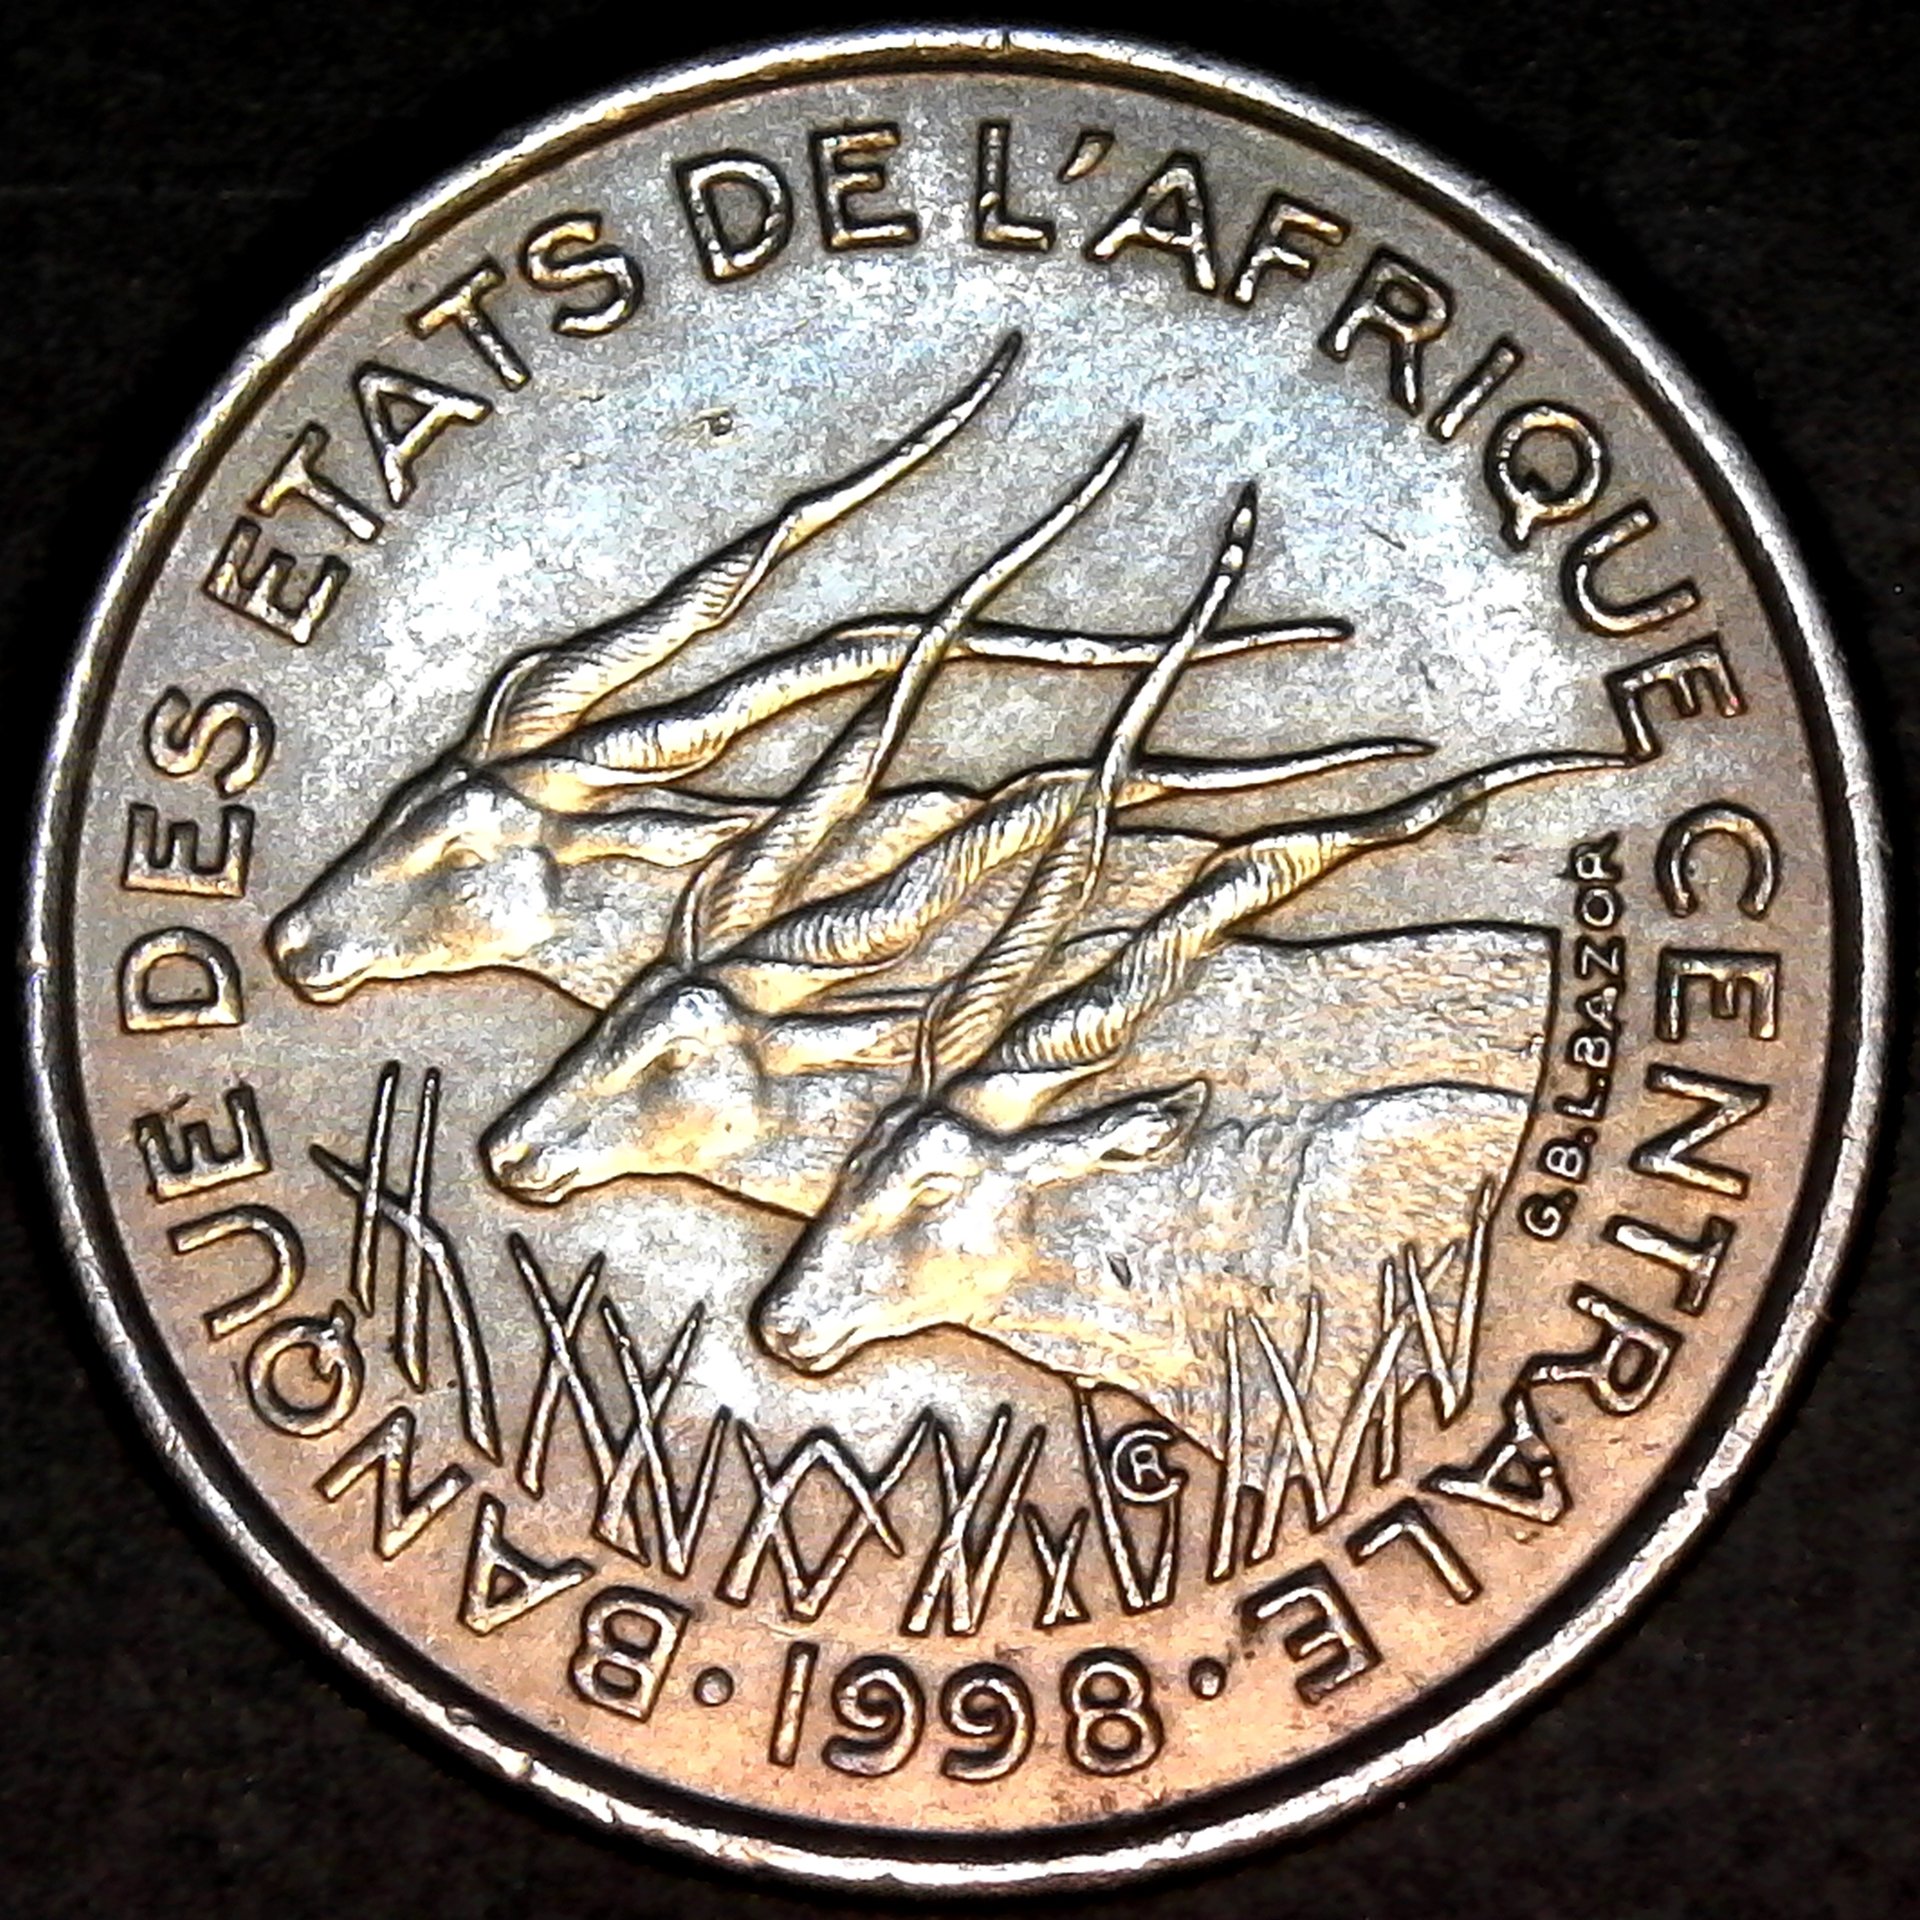 Central African States 50 francs 1998 obv.jpg